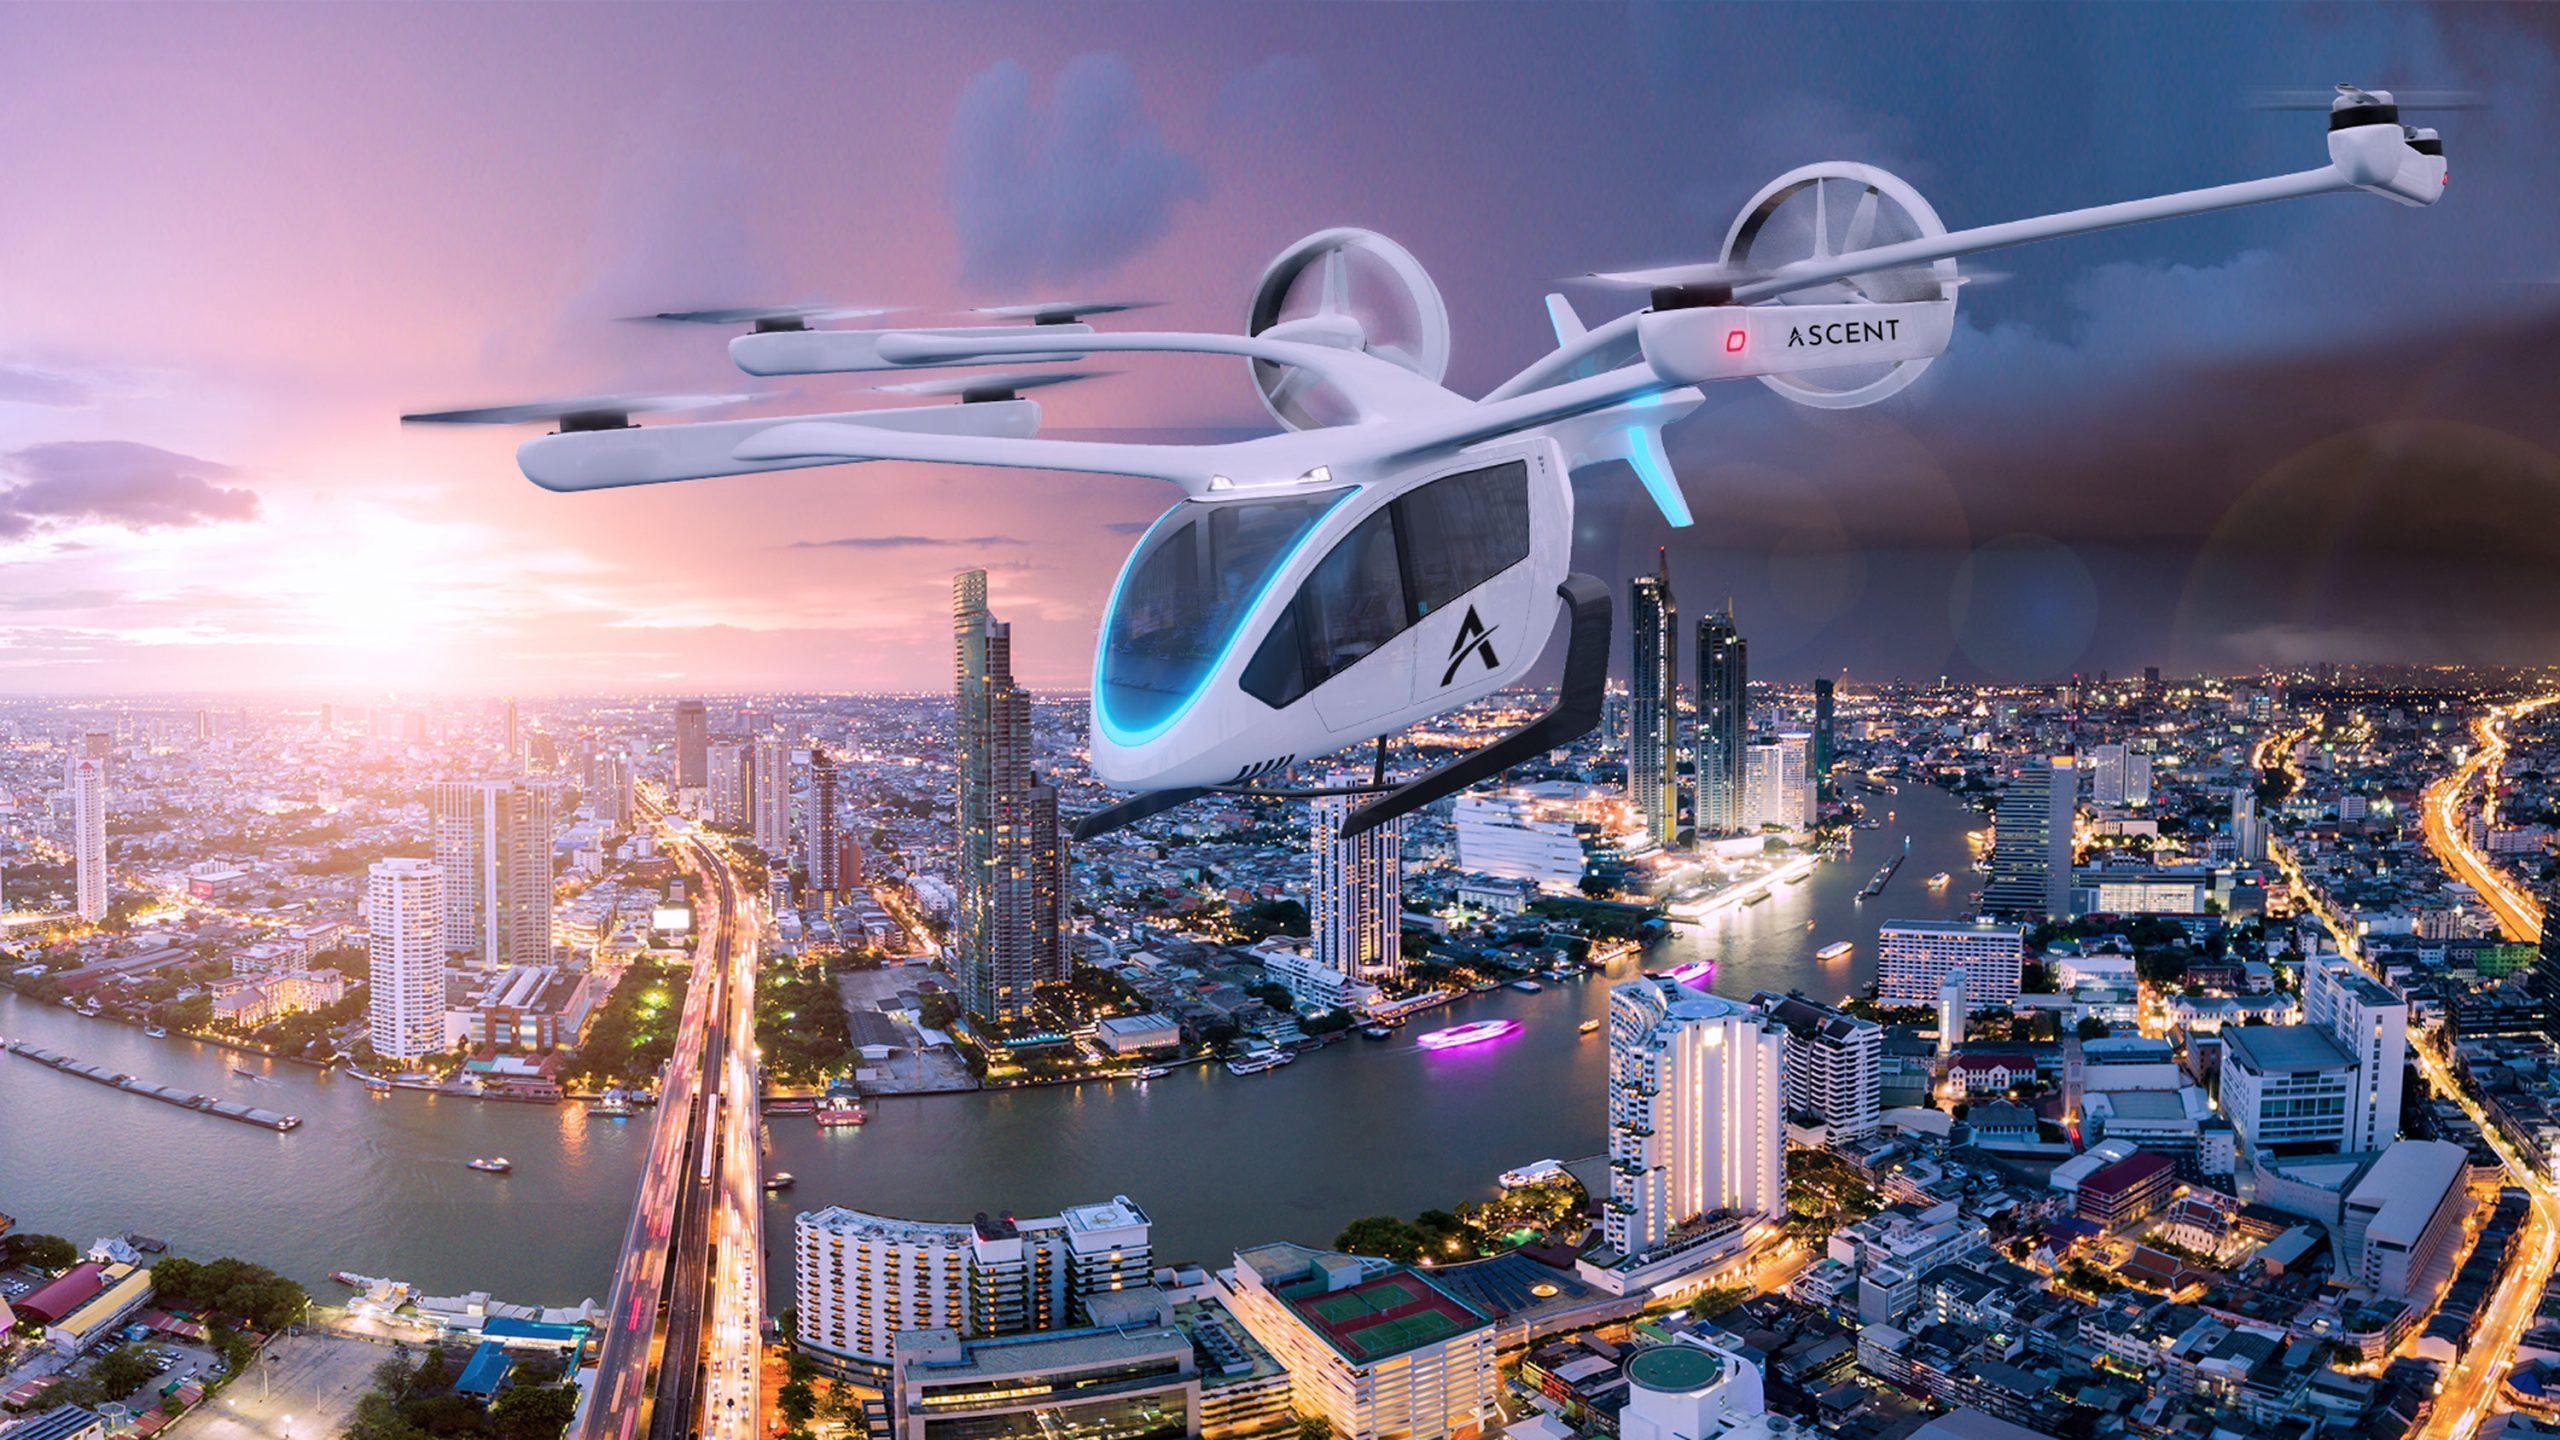 Singapura, 14 Juni 2021 – Eve Urban Air Mobility Solutions, Inc. (Eve)